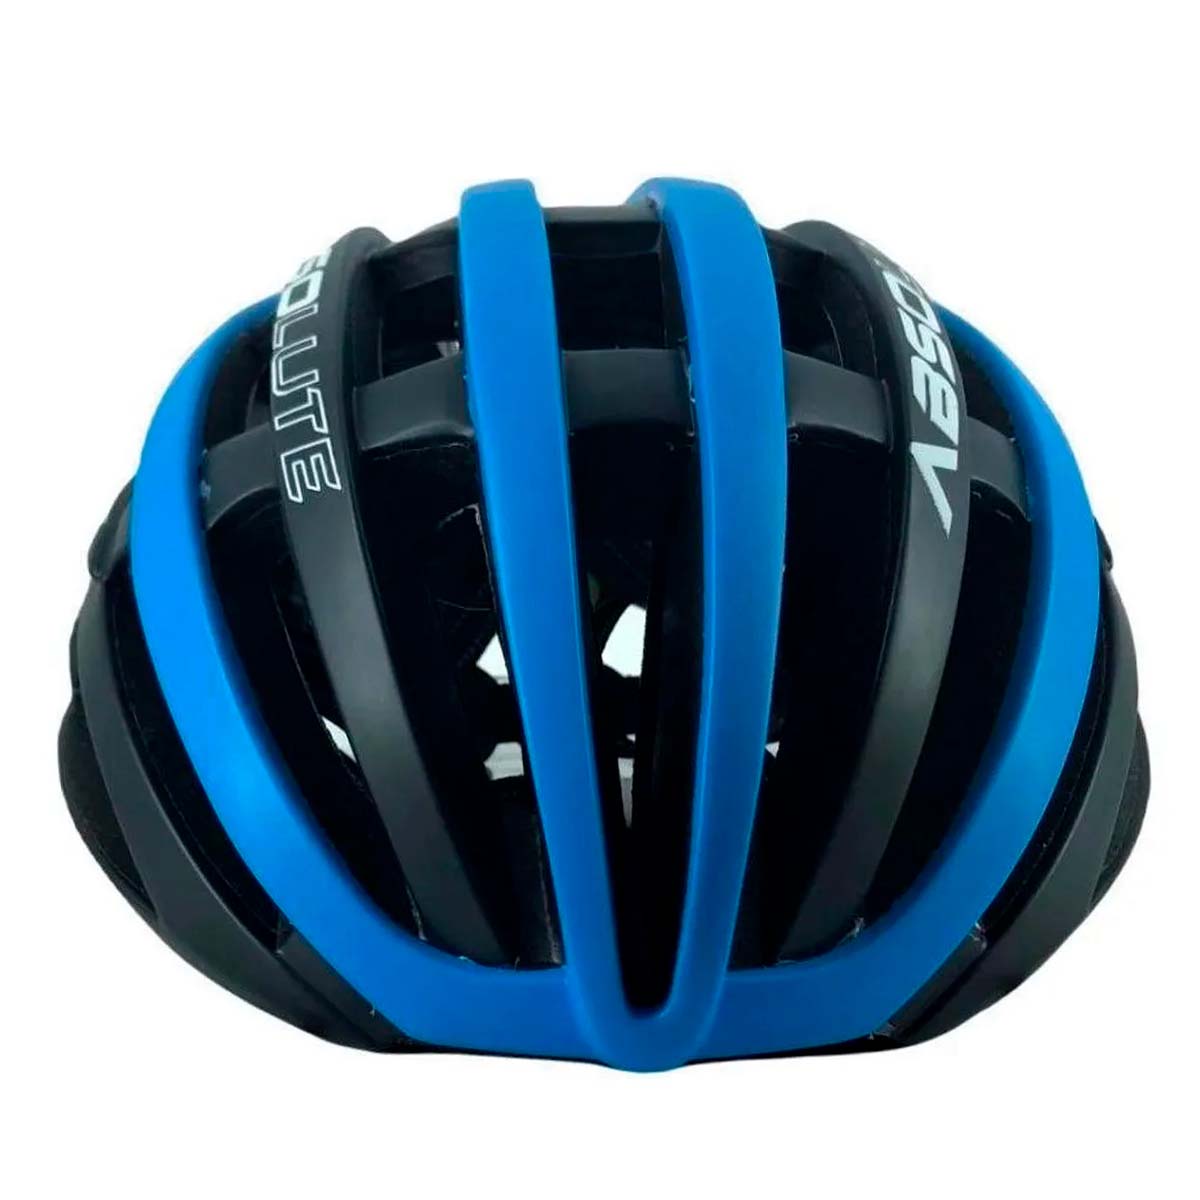 Capacete Absolute Prime Preto e Azul In Mold Ciclismo